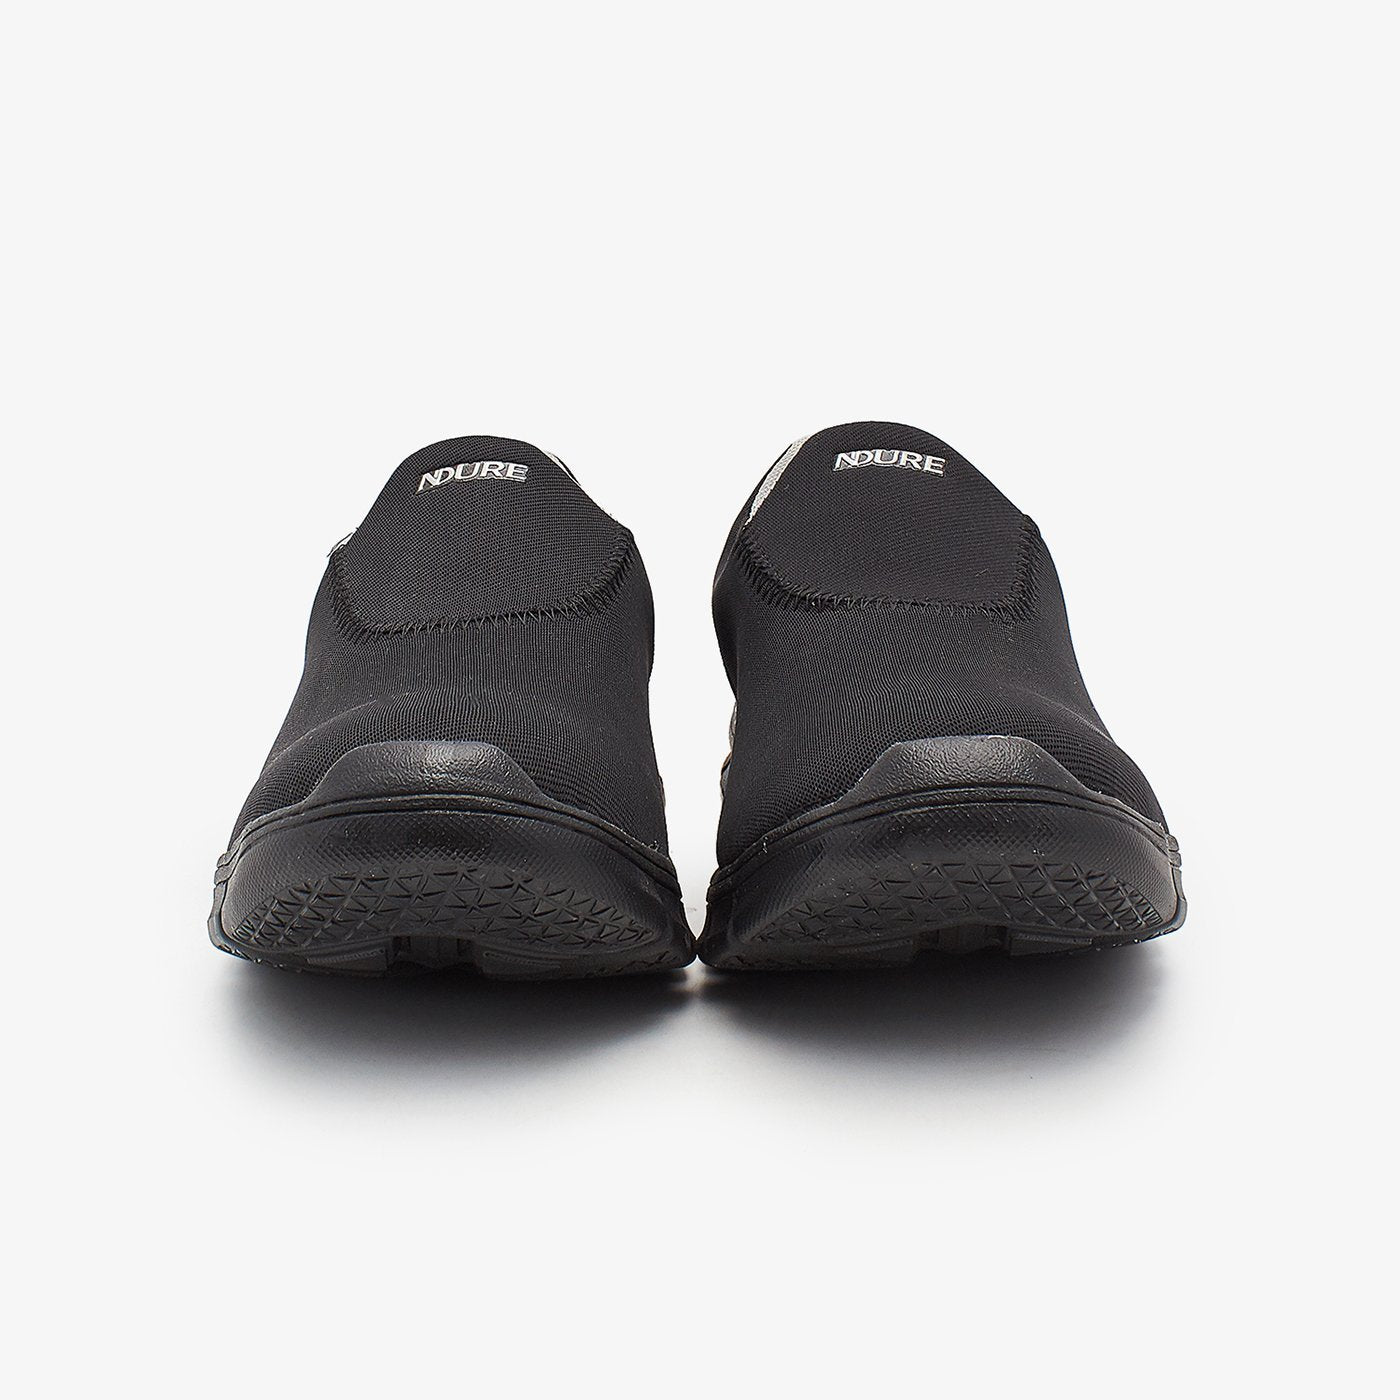 Shoes black for men